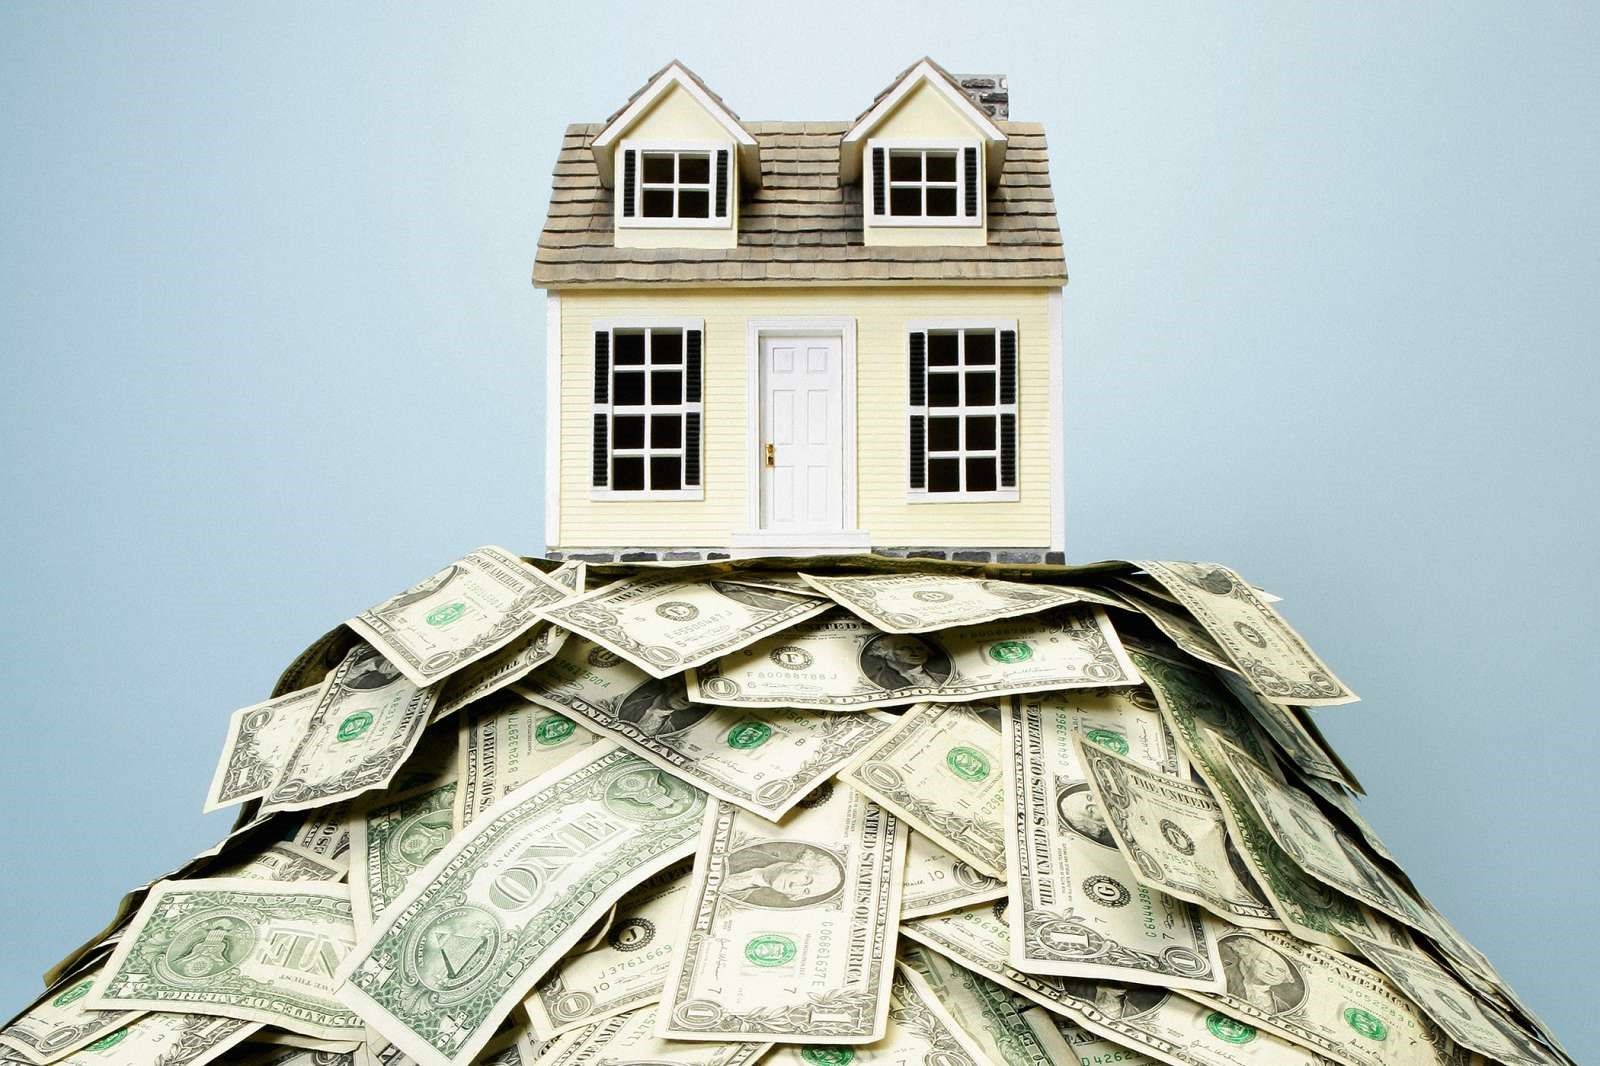 Lần đầu rao bán chung cư có nên thuê môi giới bất động sản không?